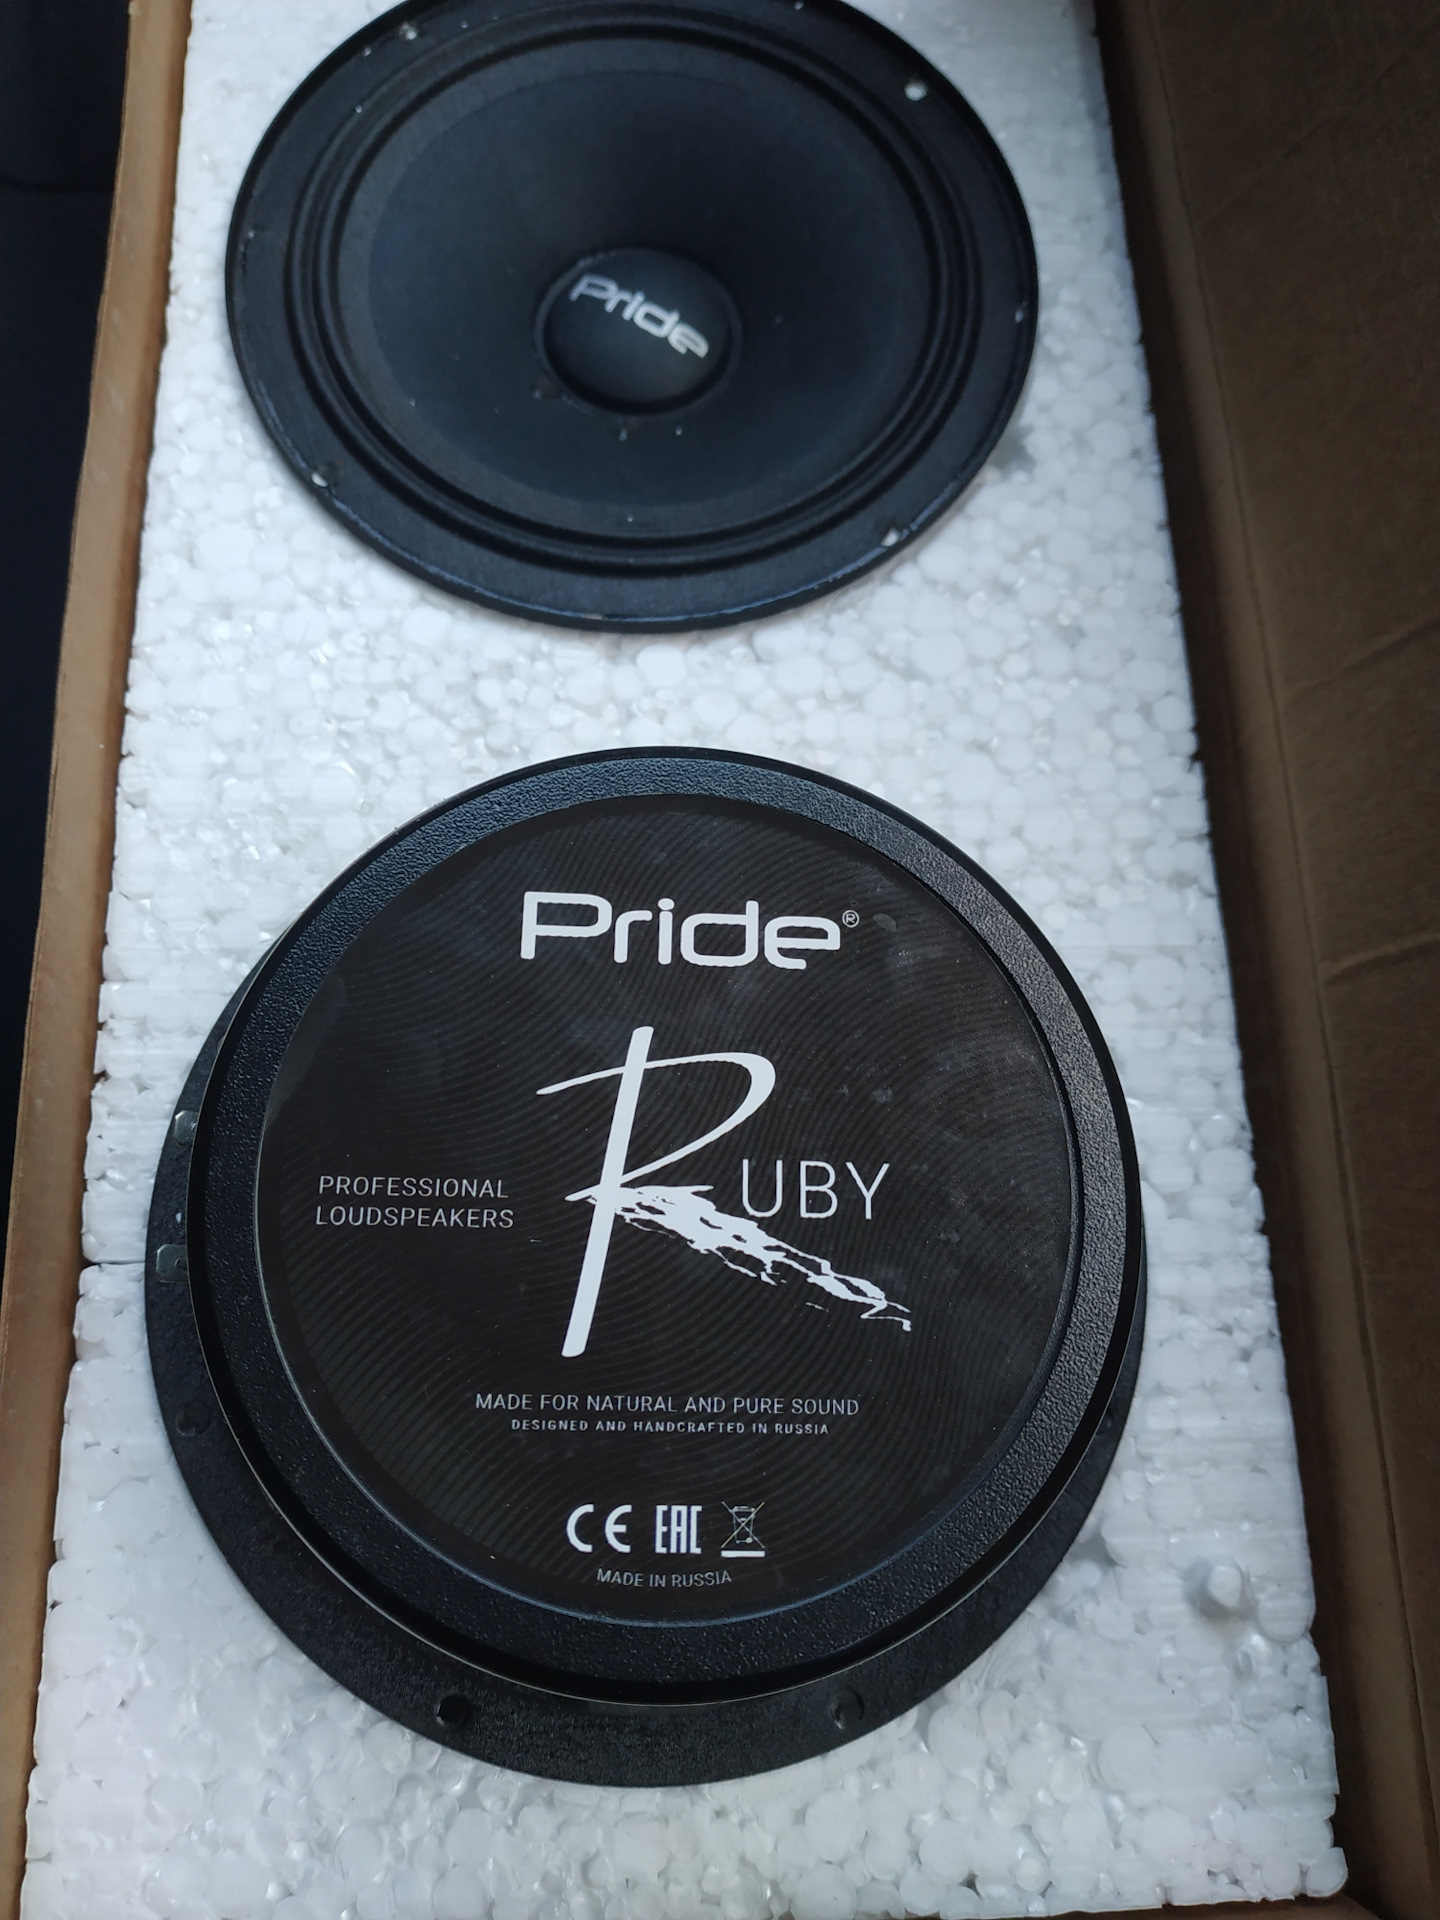 Прайд руби характеристики. Pride Ruby 6. Pride Ruby 6.5. Pride Ruby 16.5. Прайд Руби 8 диаметр.